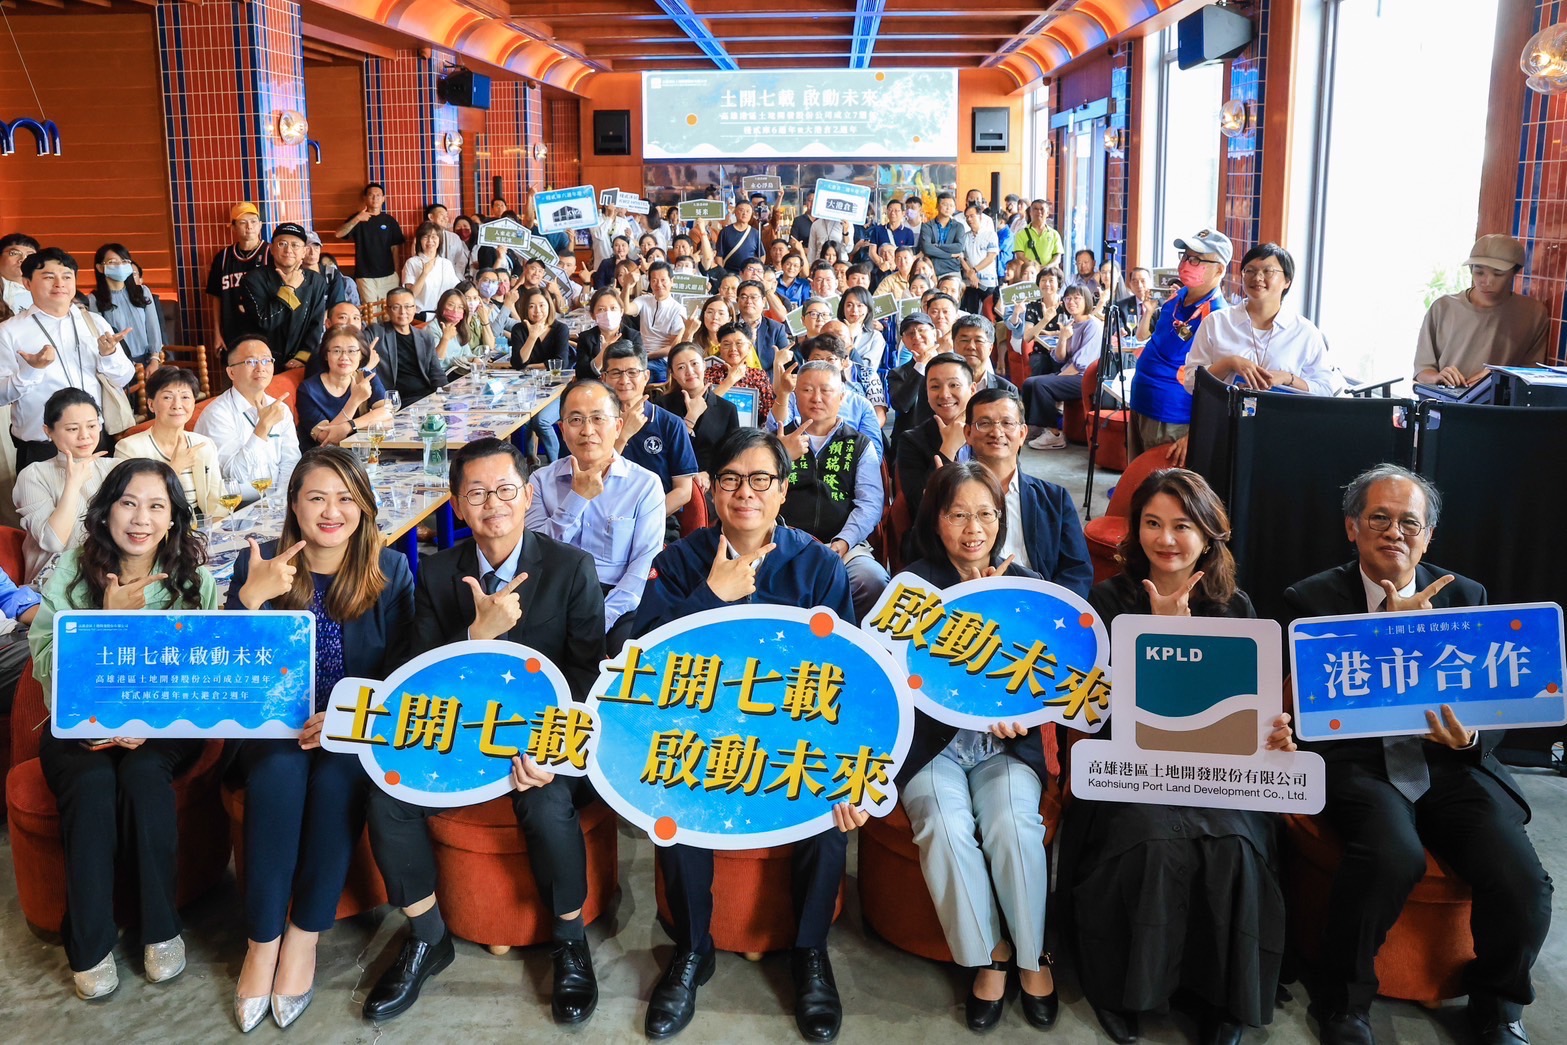 高雄港區土開公司慶成立7週年 陳其邁點睛大漁旗、盼一起啟動未來